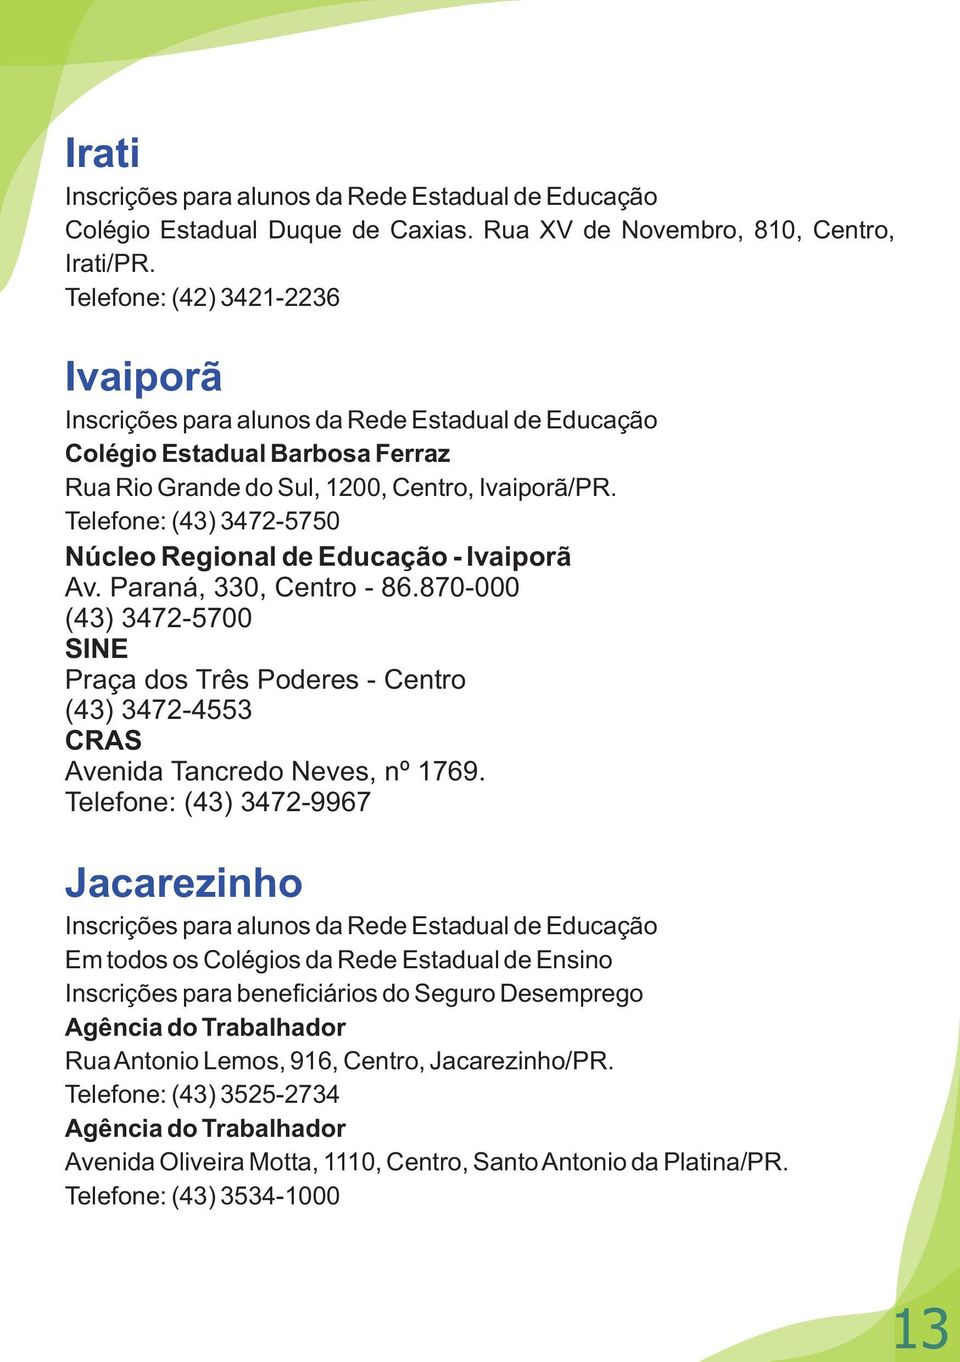 Telefone: (43) 3472-5750 Núcleo Regional de Educação - Ivaiporã Av. Paraná, 330, Centro - 86.